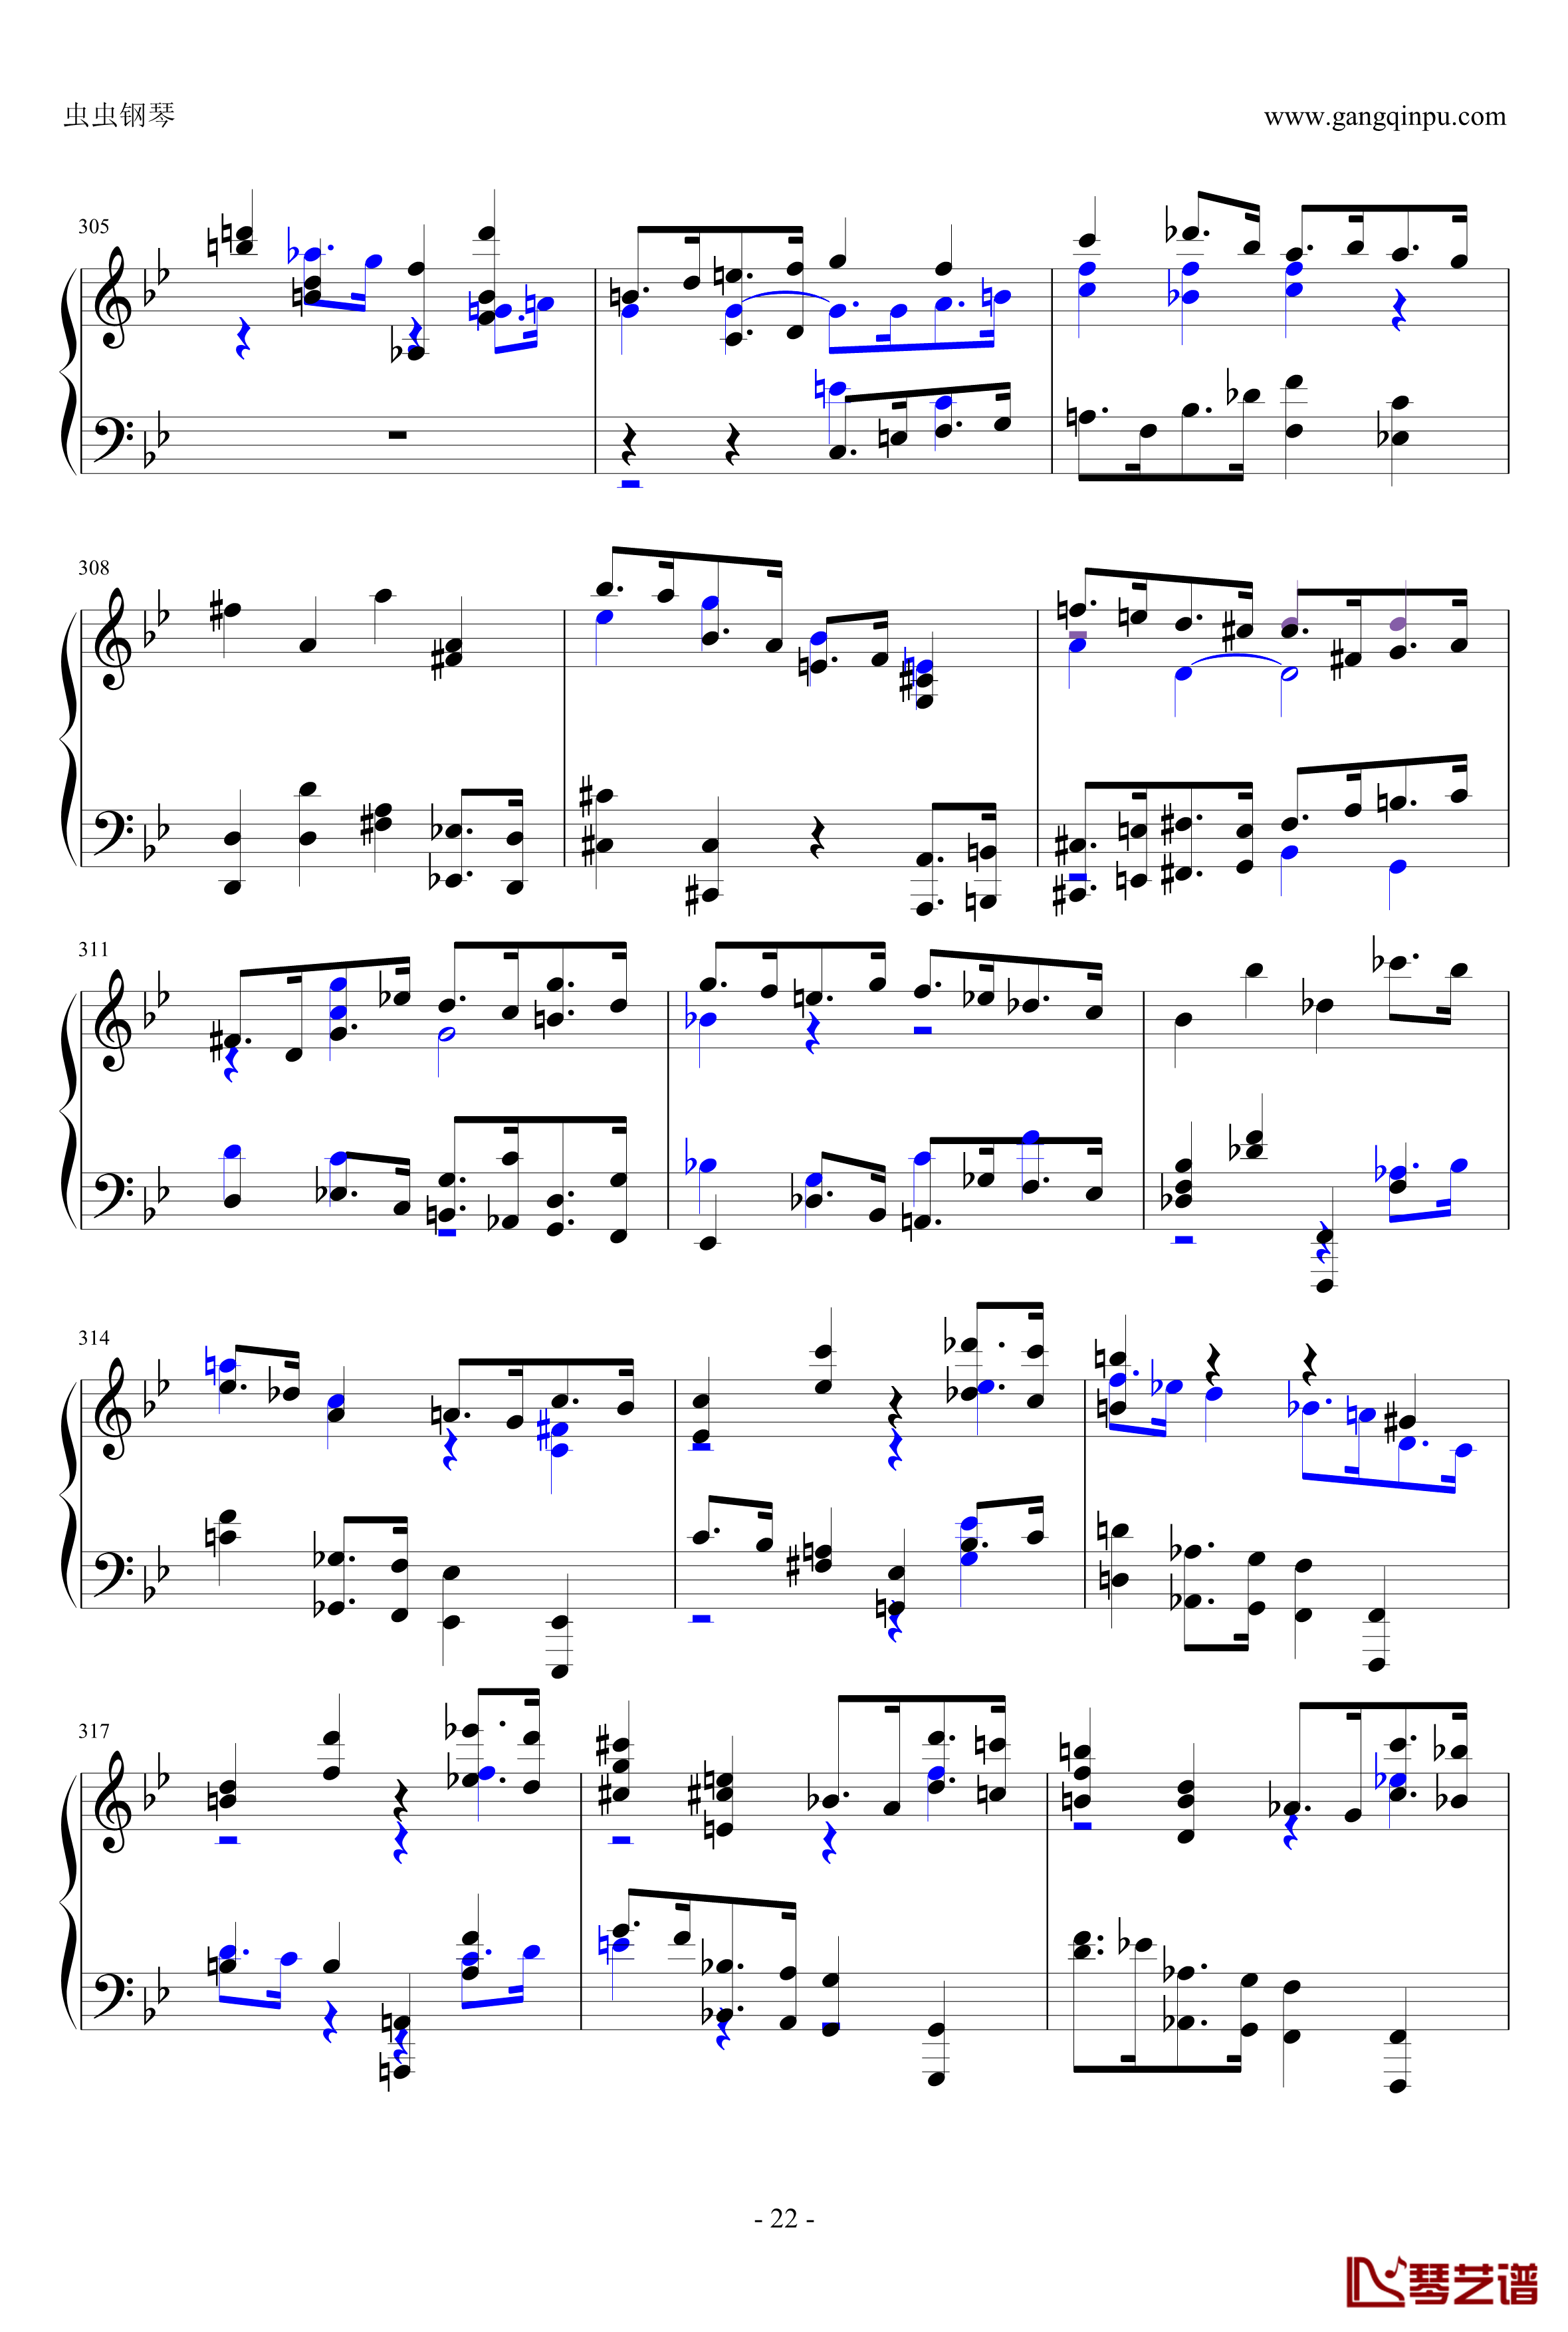 布鲁克纳第五交响曲第四乐章钢琴谱-钢琴独奏版